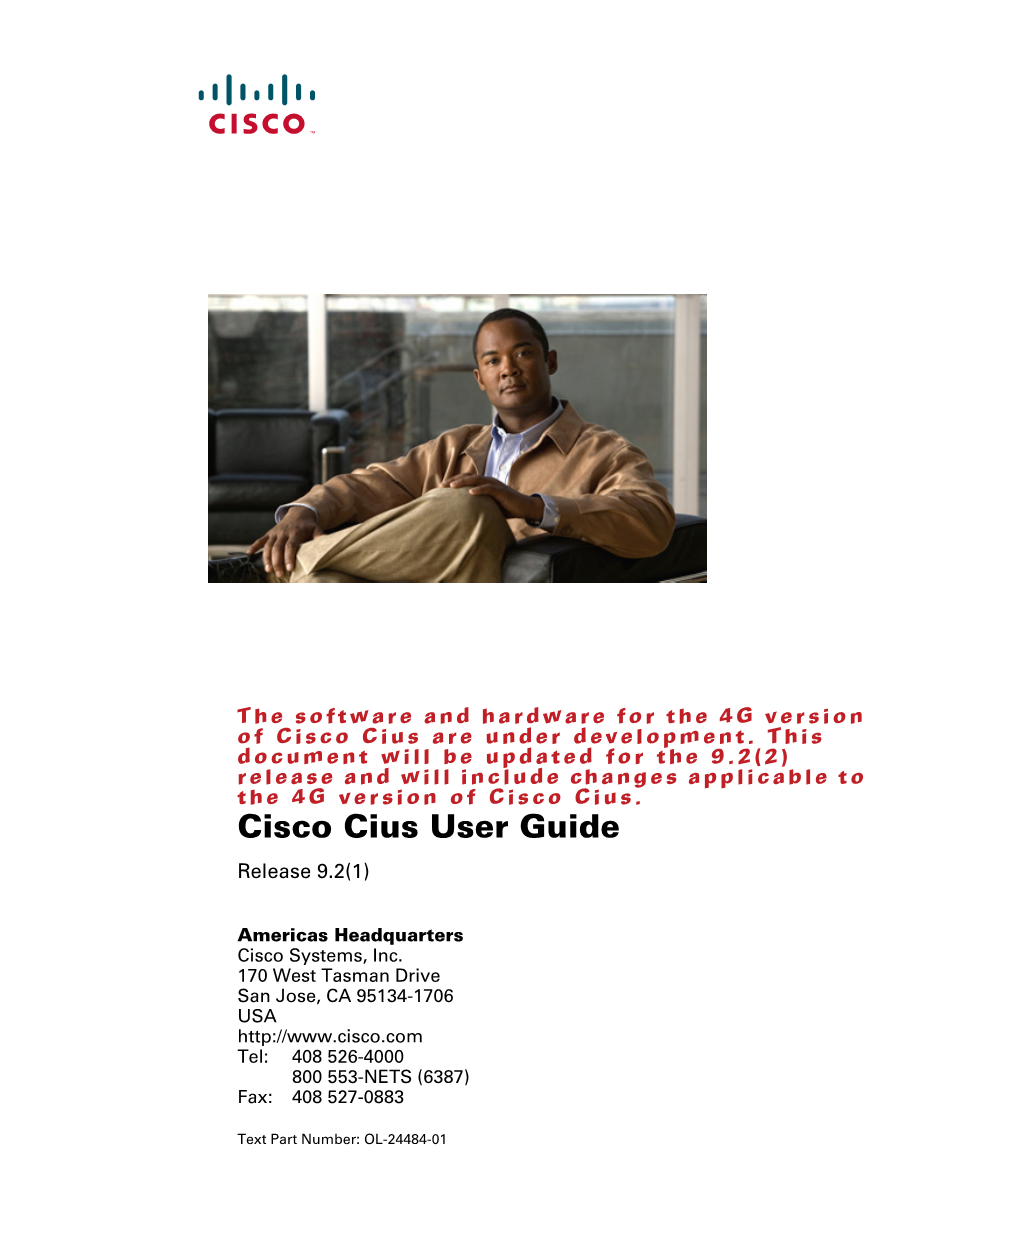 Cisco Cius User Guide Release 9.2(1)